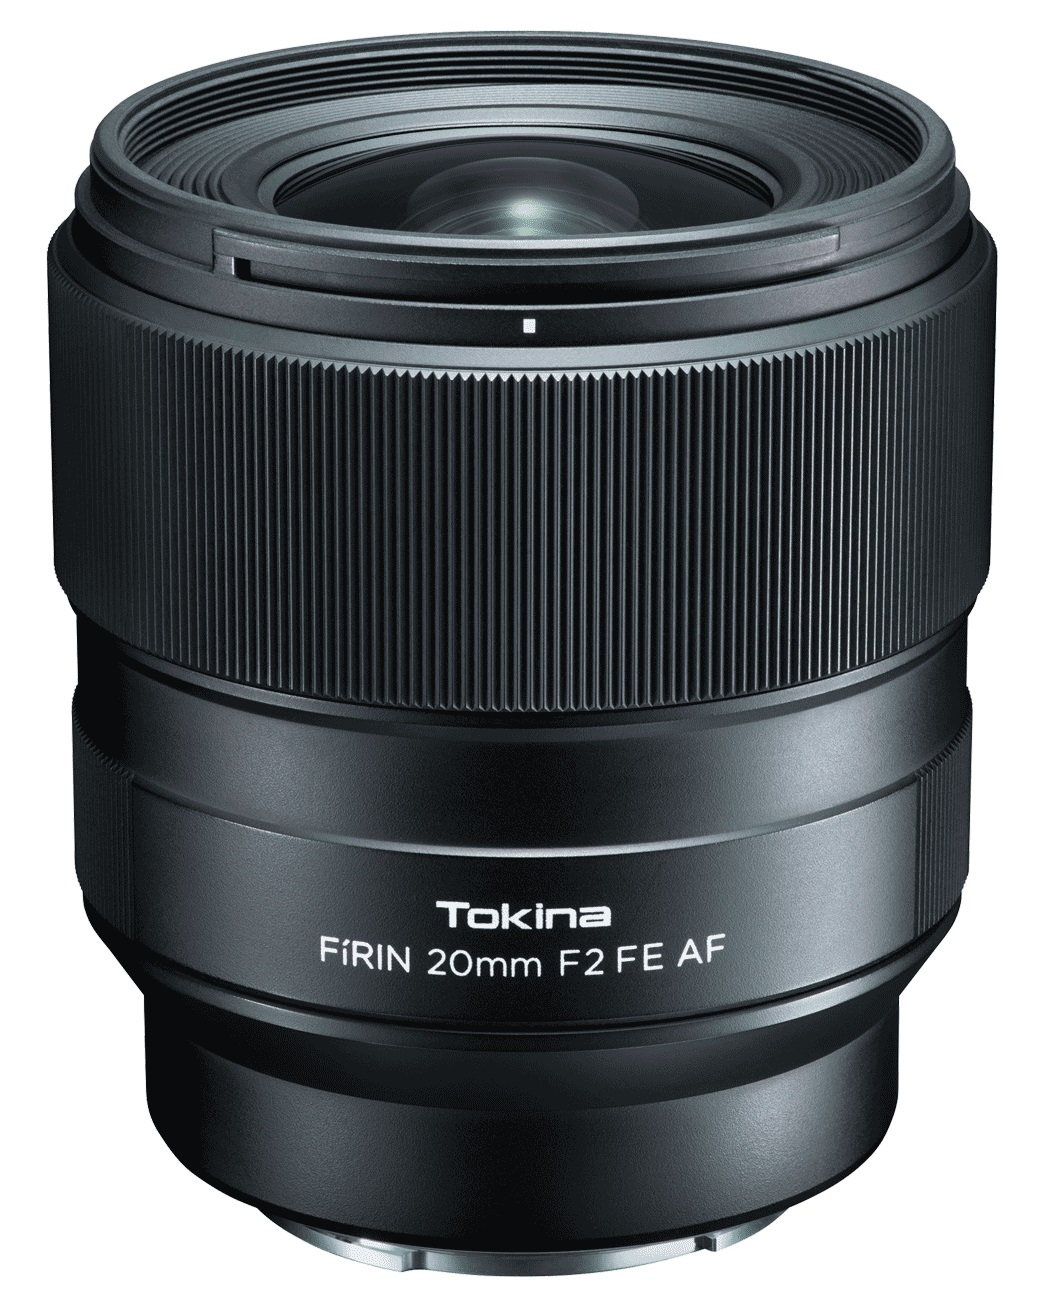 Объектив Tokina FIRIN 20mm F2 FE AF для Sony автофокус объектив beward bl0220m23 3 мп фиксированный f 2 0 мм f2 0 2 3 ик коррекция крепление m12